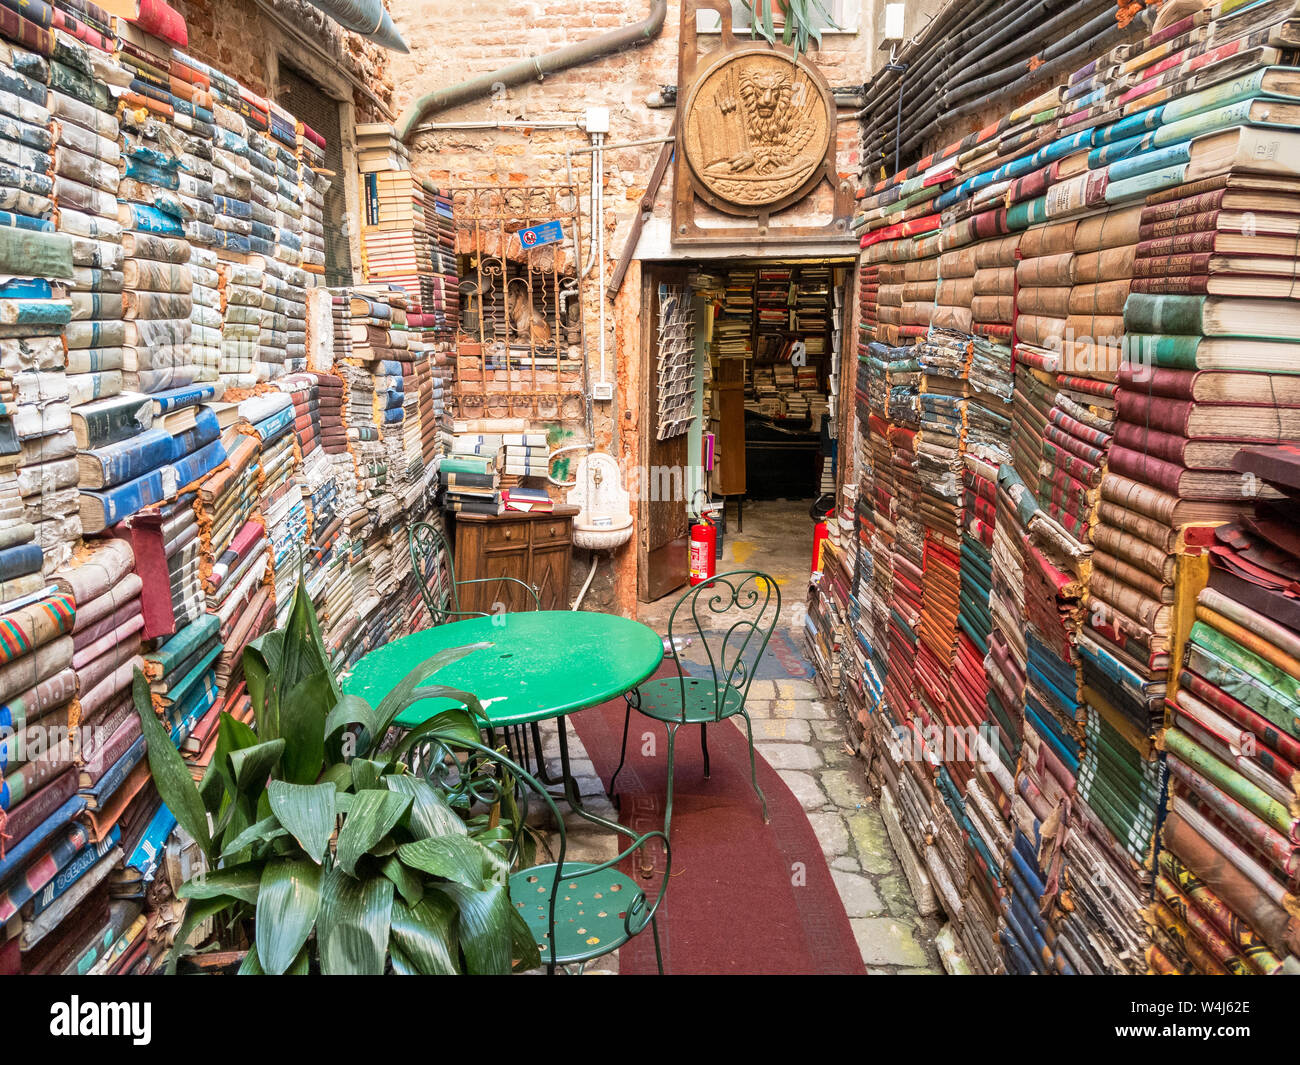 Libreria Acqua alta a Venezia, Italia Foto stock - Alamy